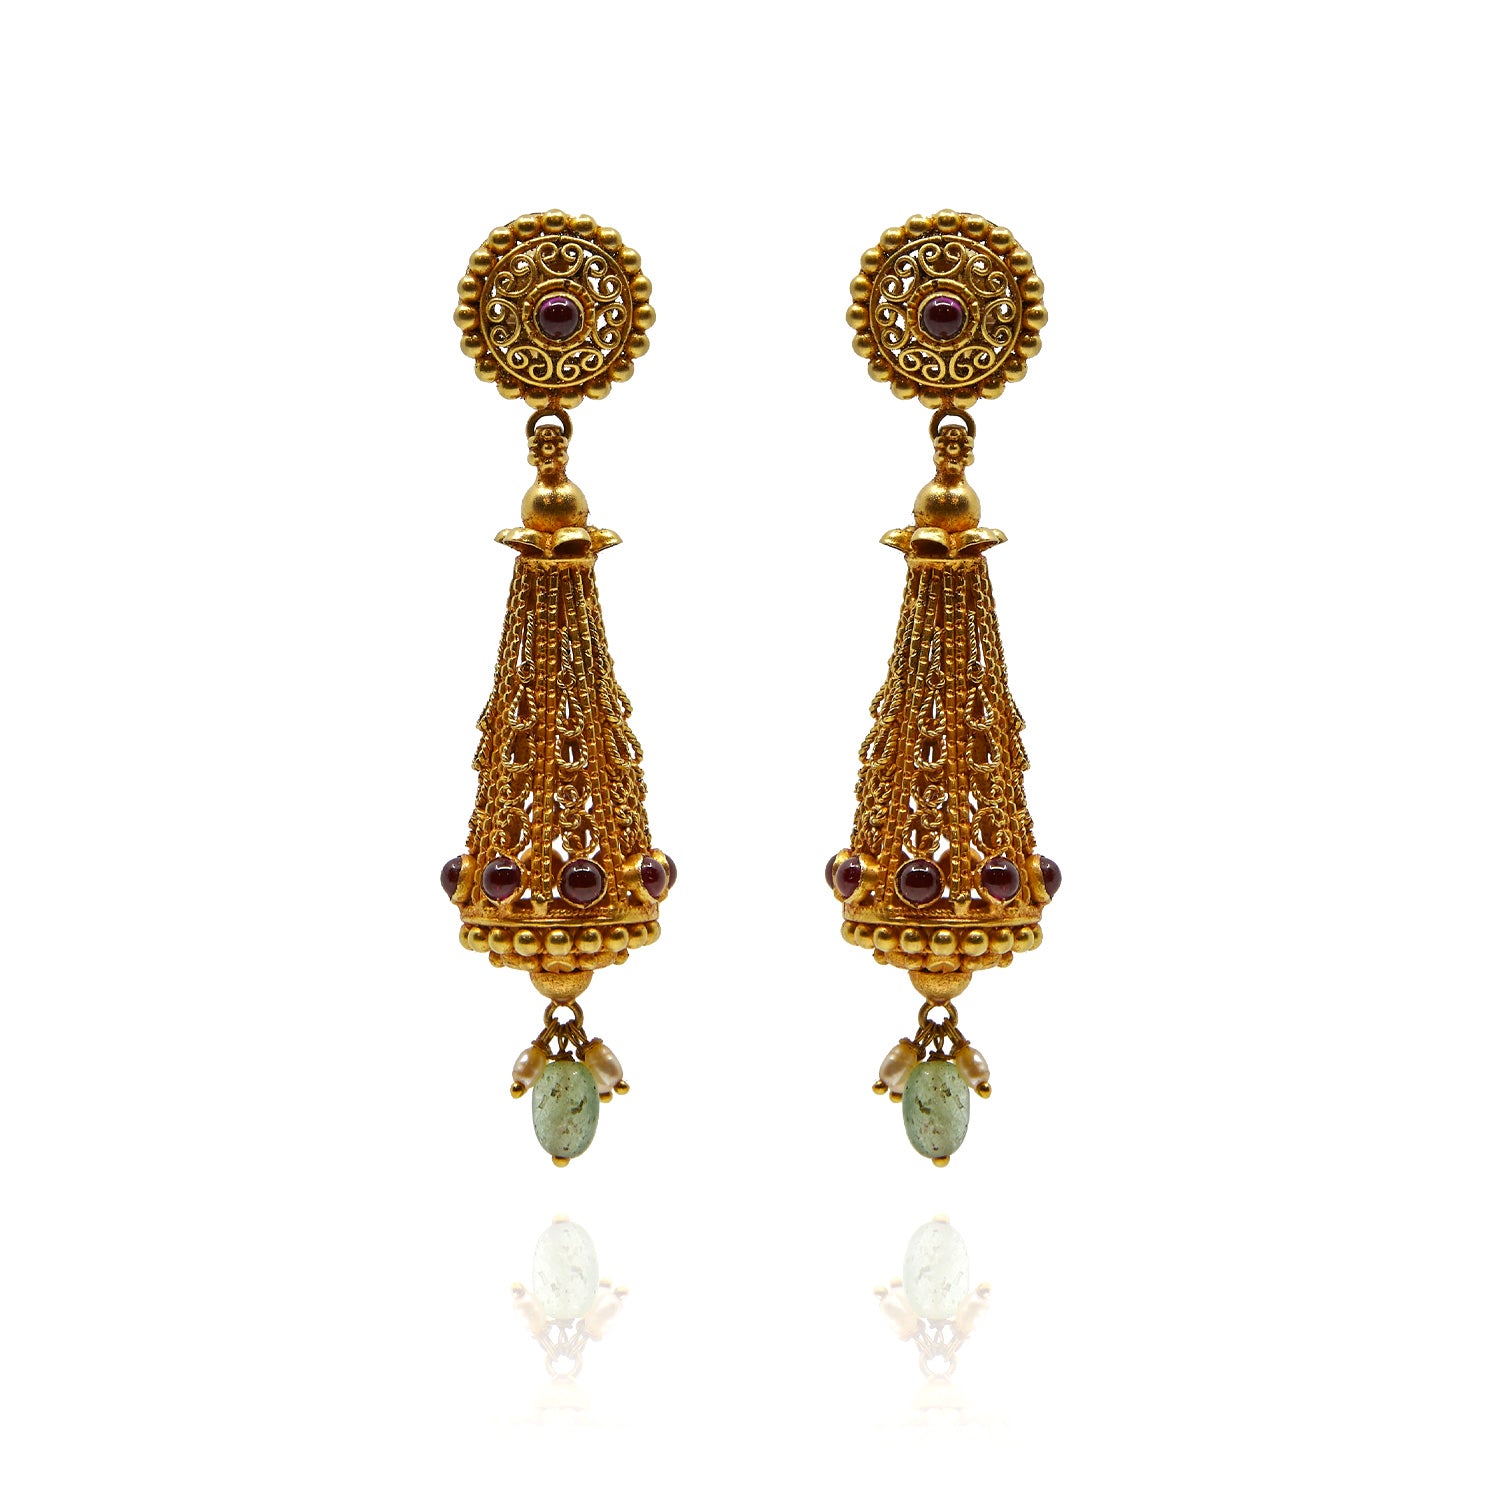 Handgefertigte Ohrringe aus Gelbgold mit Rubin, Jade und Perlen